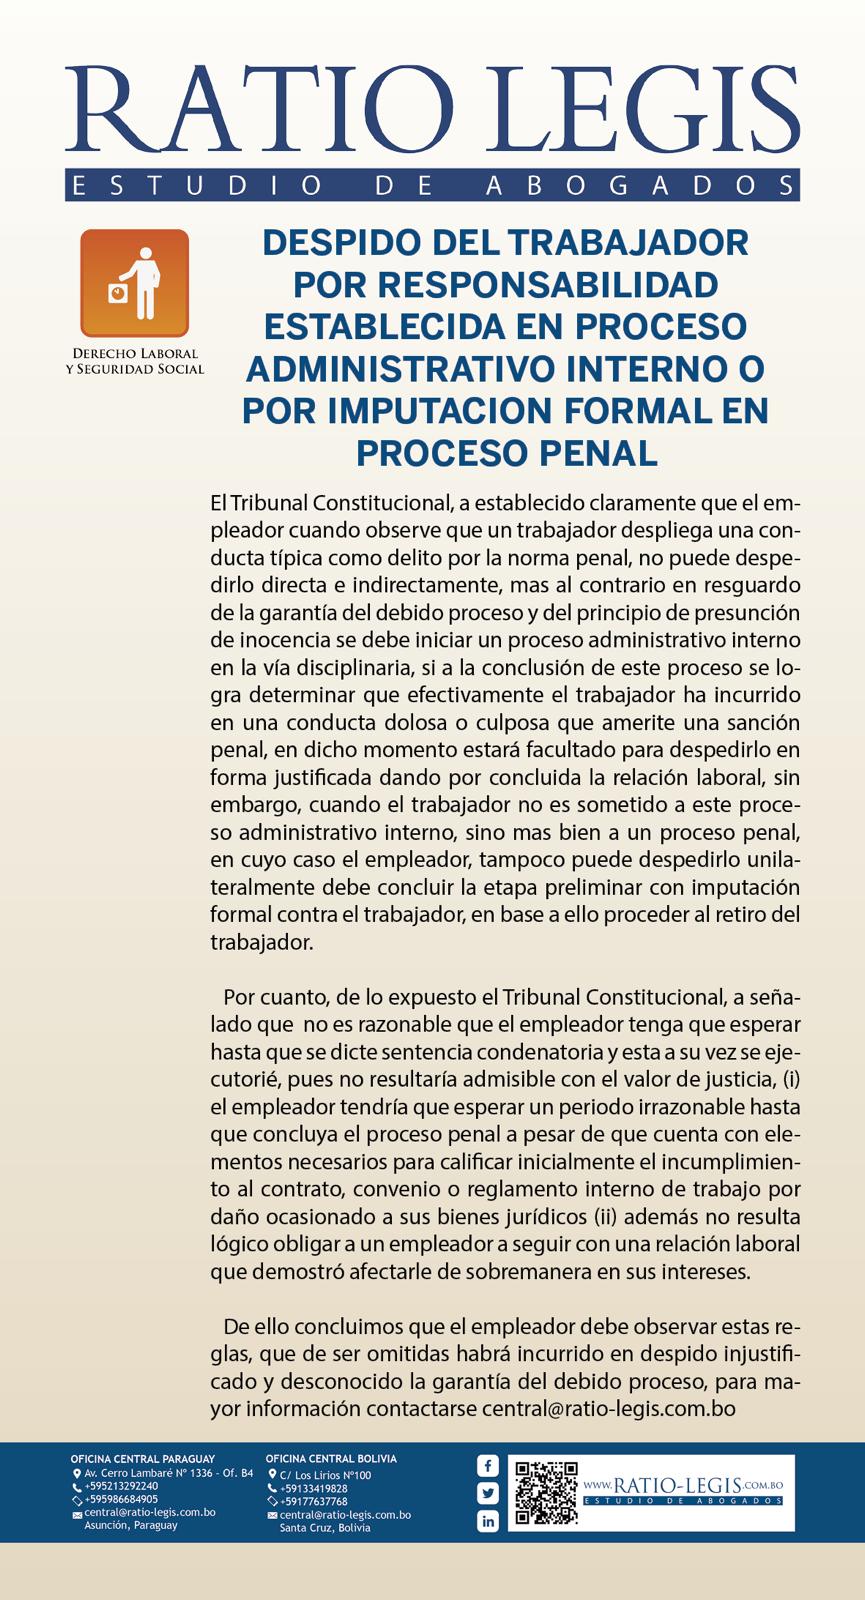 (Español) Despido del trabajador por responsabilidad establecida en proceso administrativo interno o por imputación formal en proceso penal